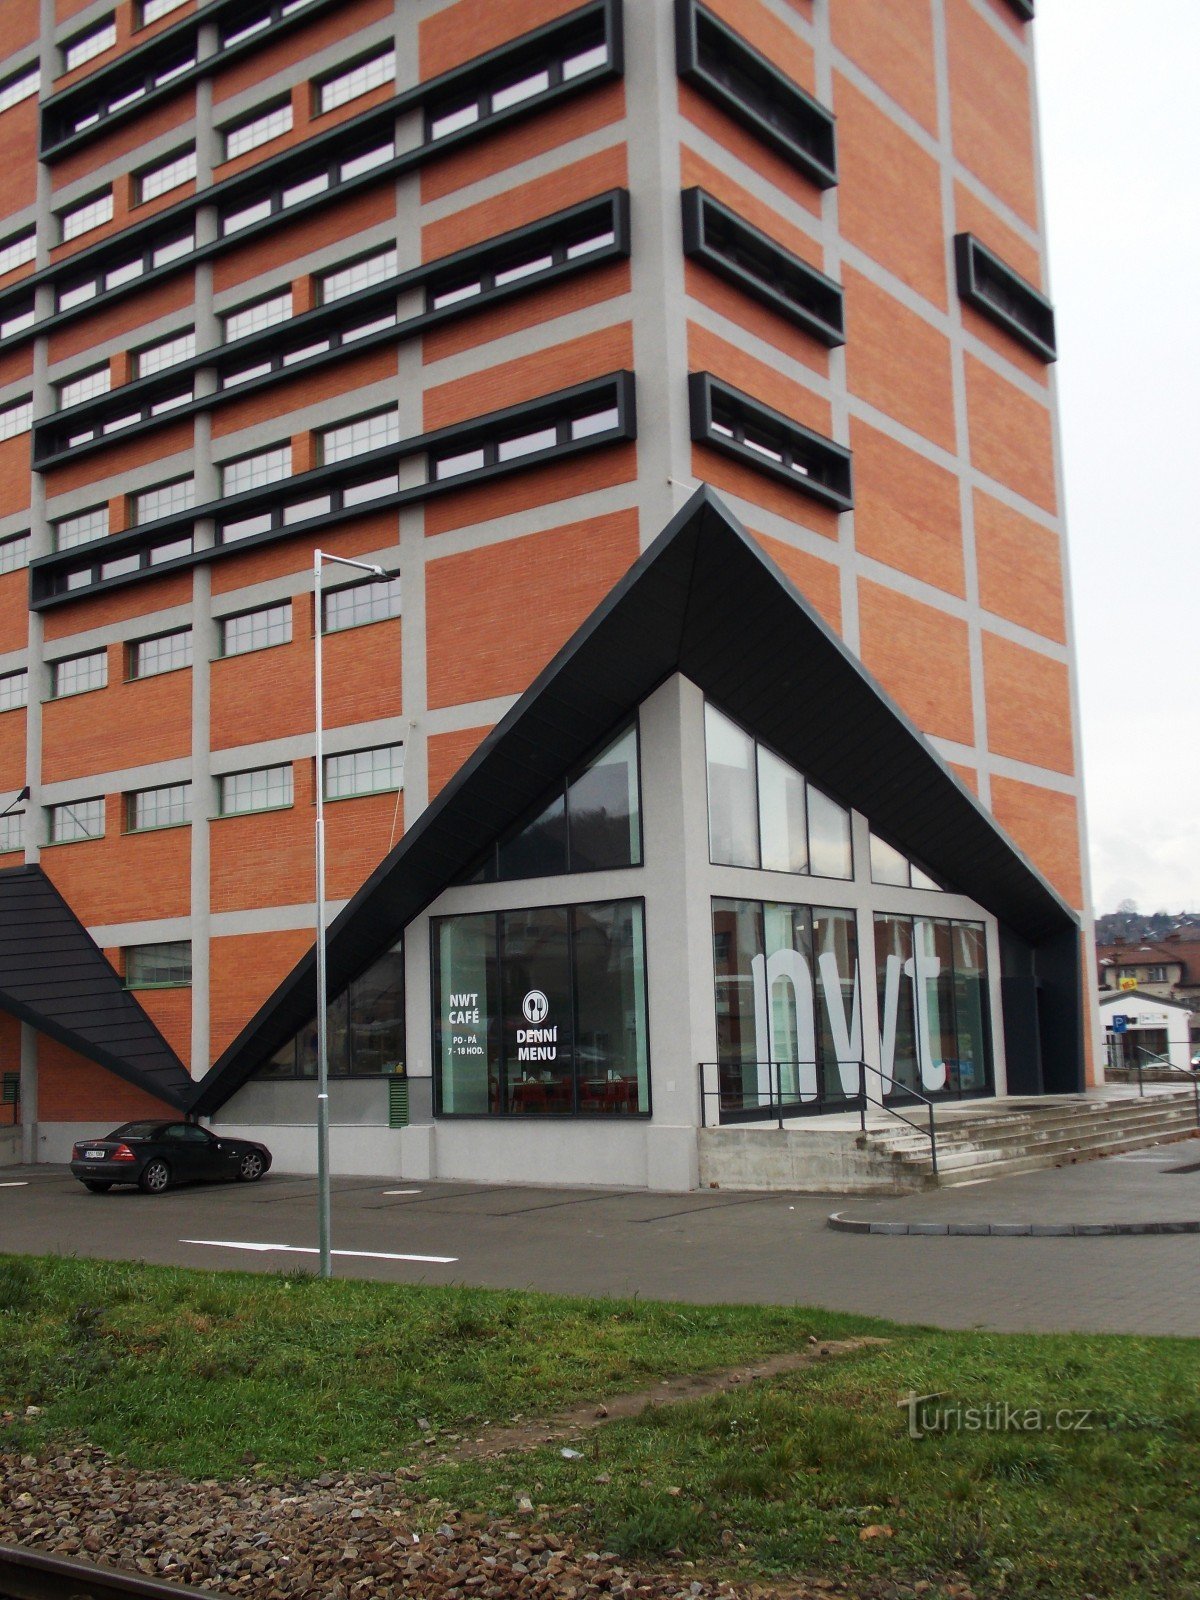 NWT building in Zlín, Prštné